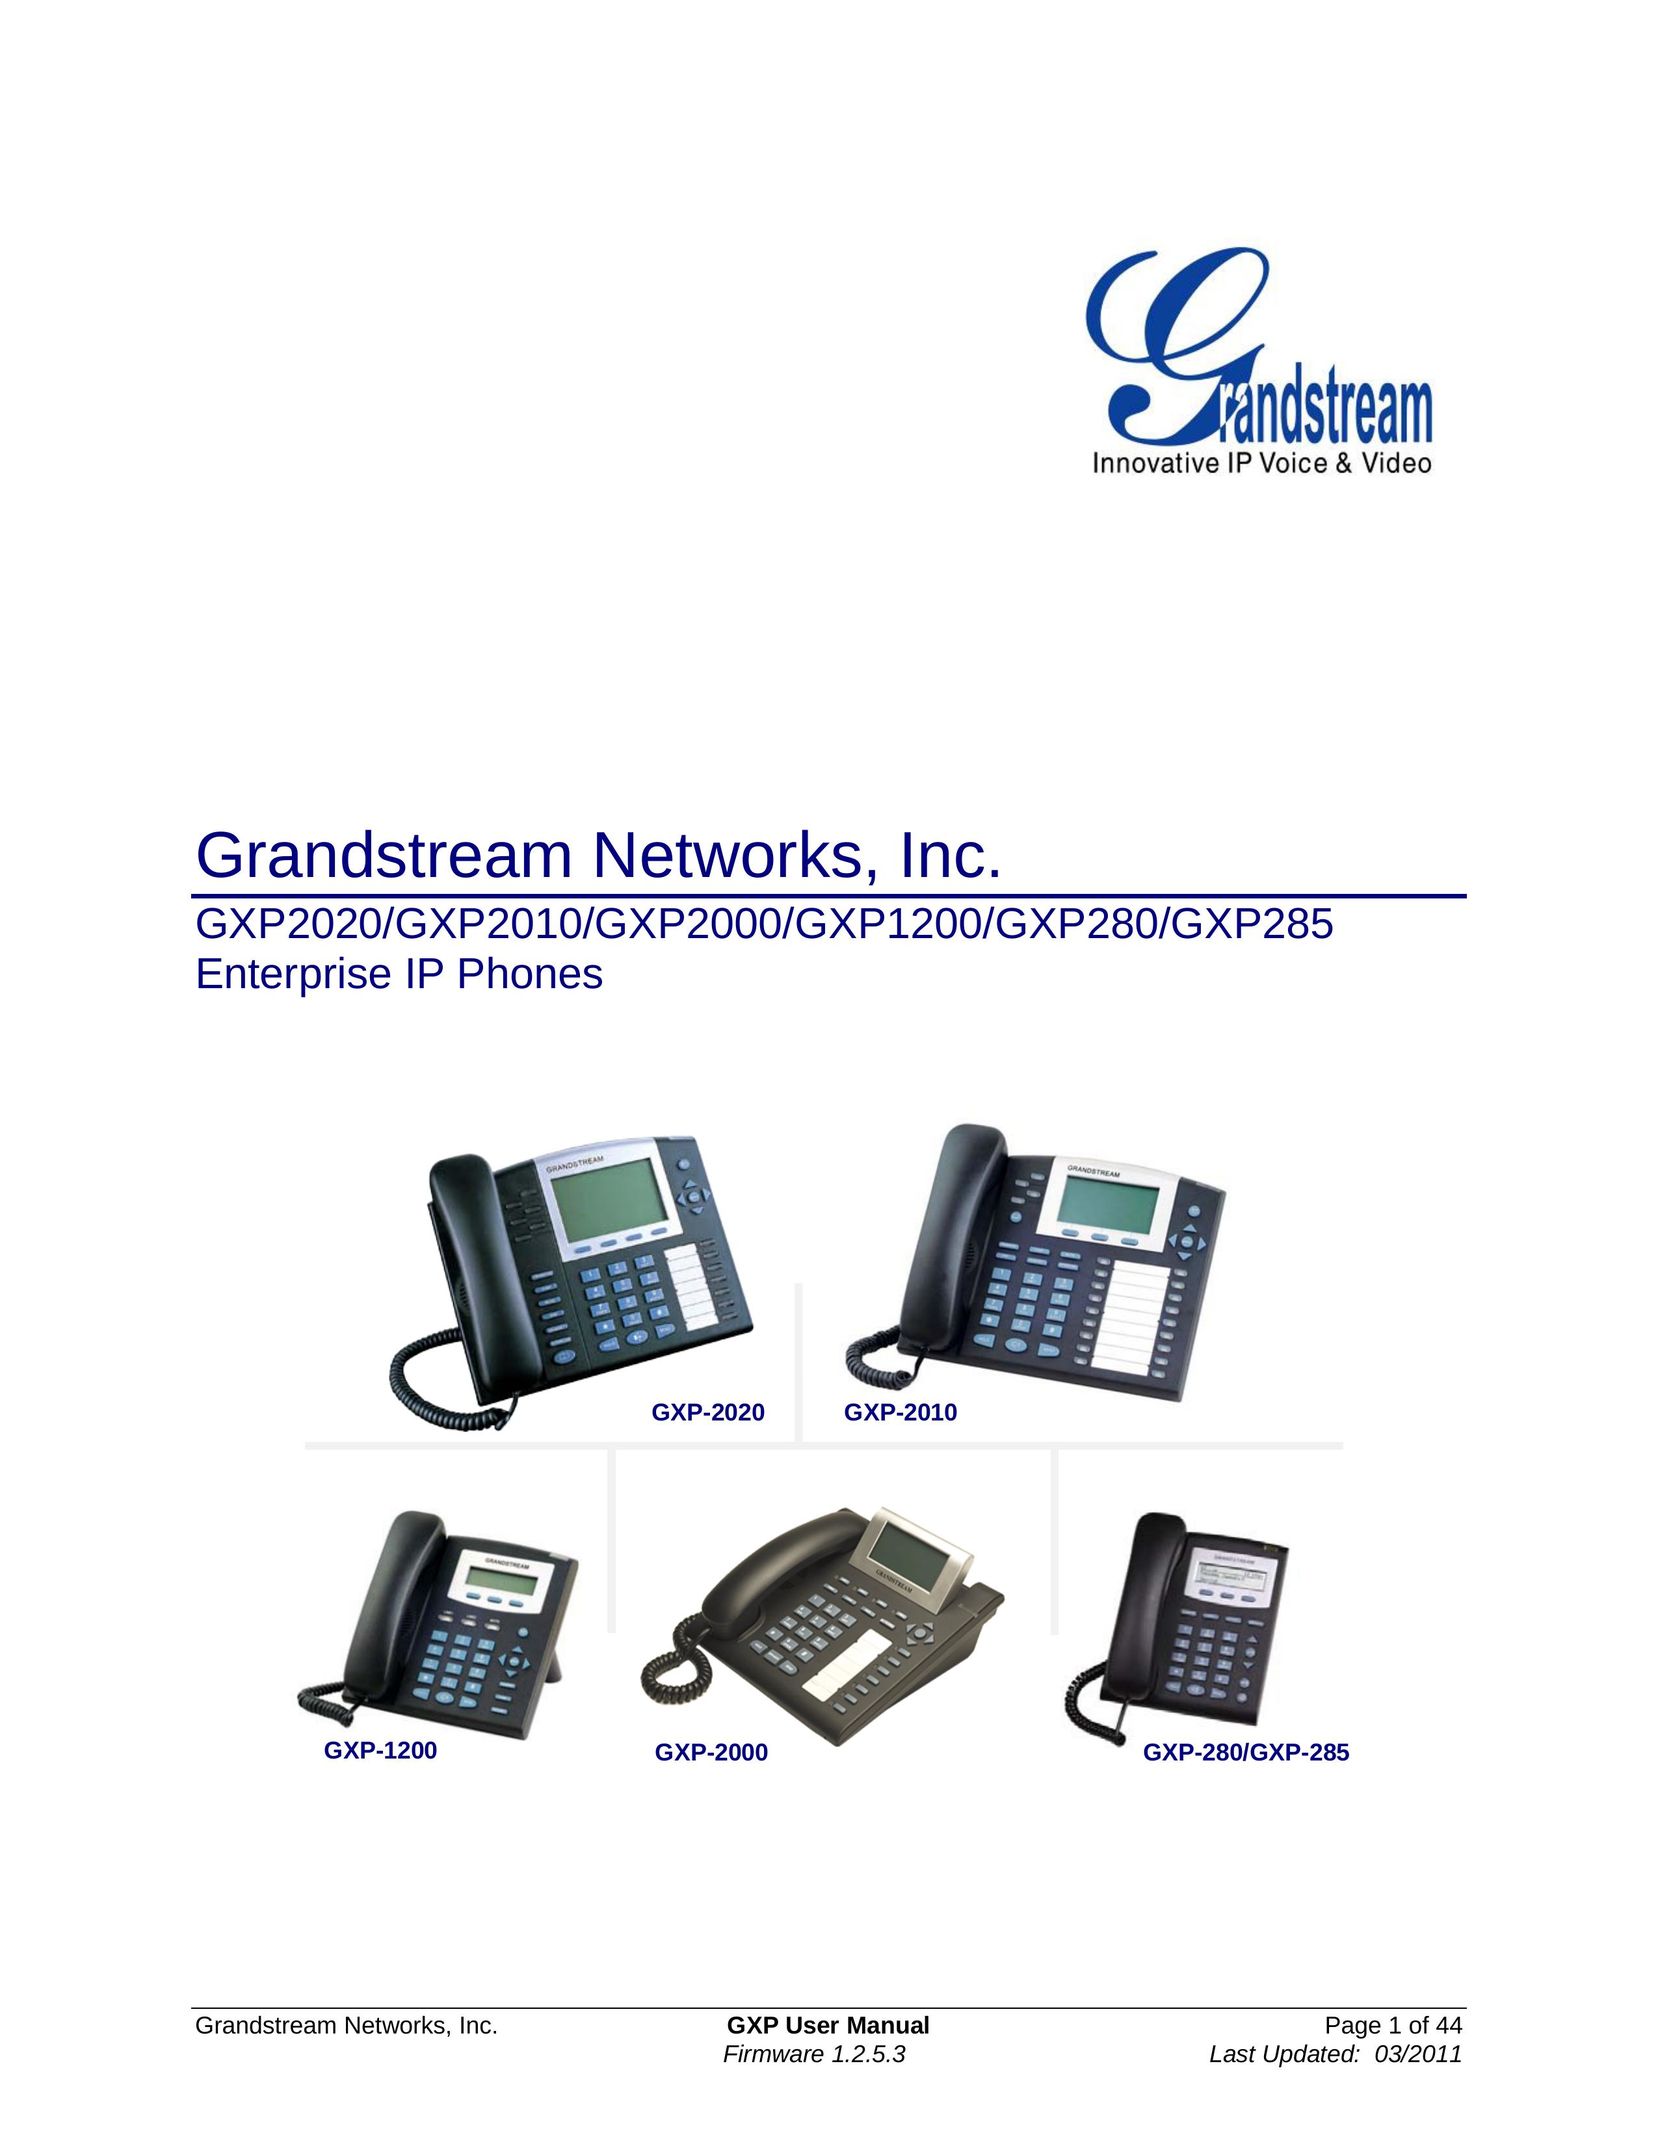 Grandstream Networks GXP2010 IP Phone User Manual